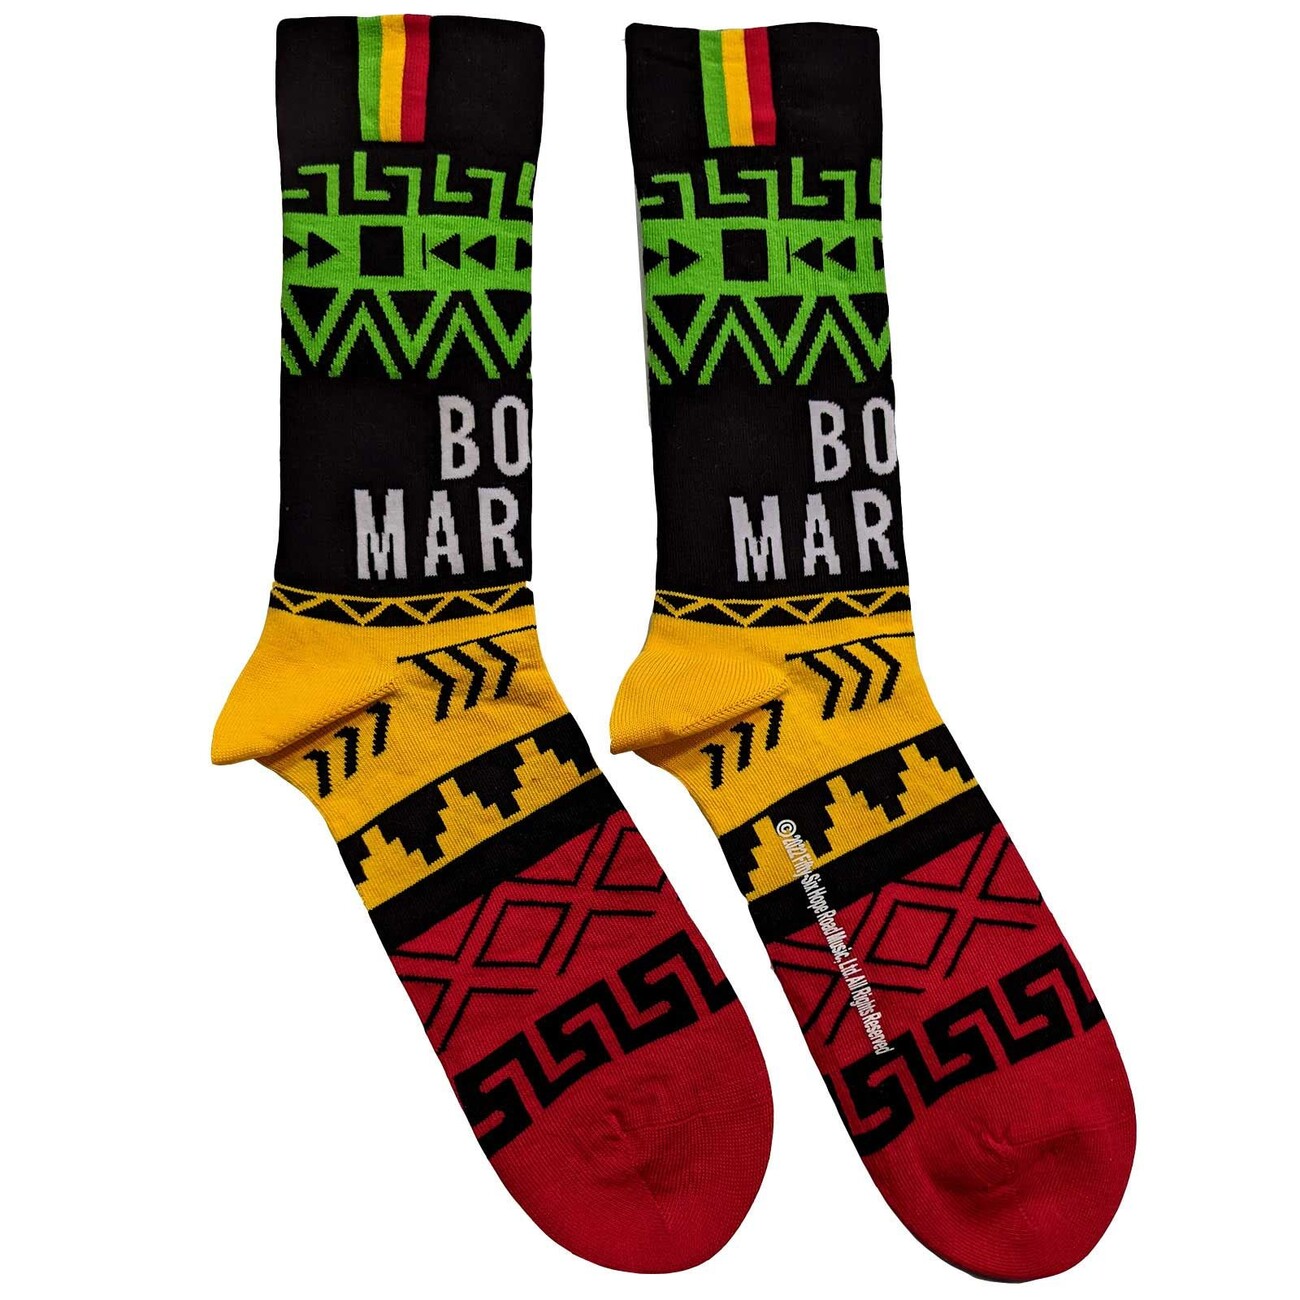 Sokker Bob Marley - Press | og til merchandise fans Europosters